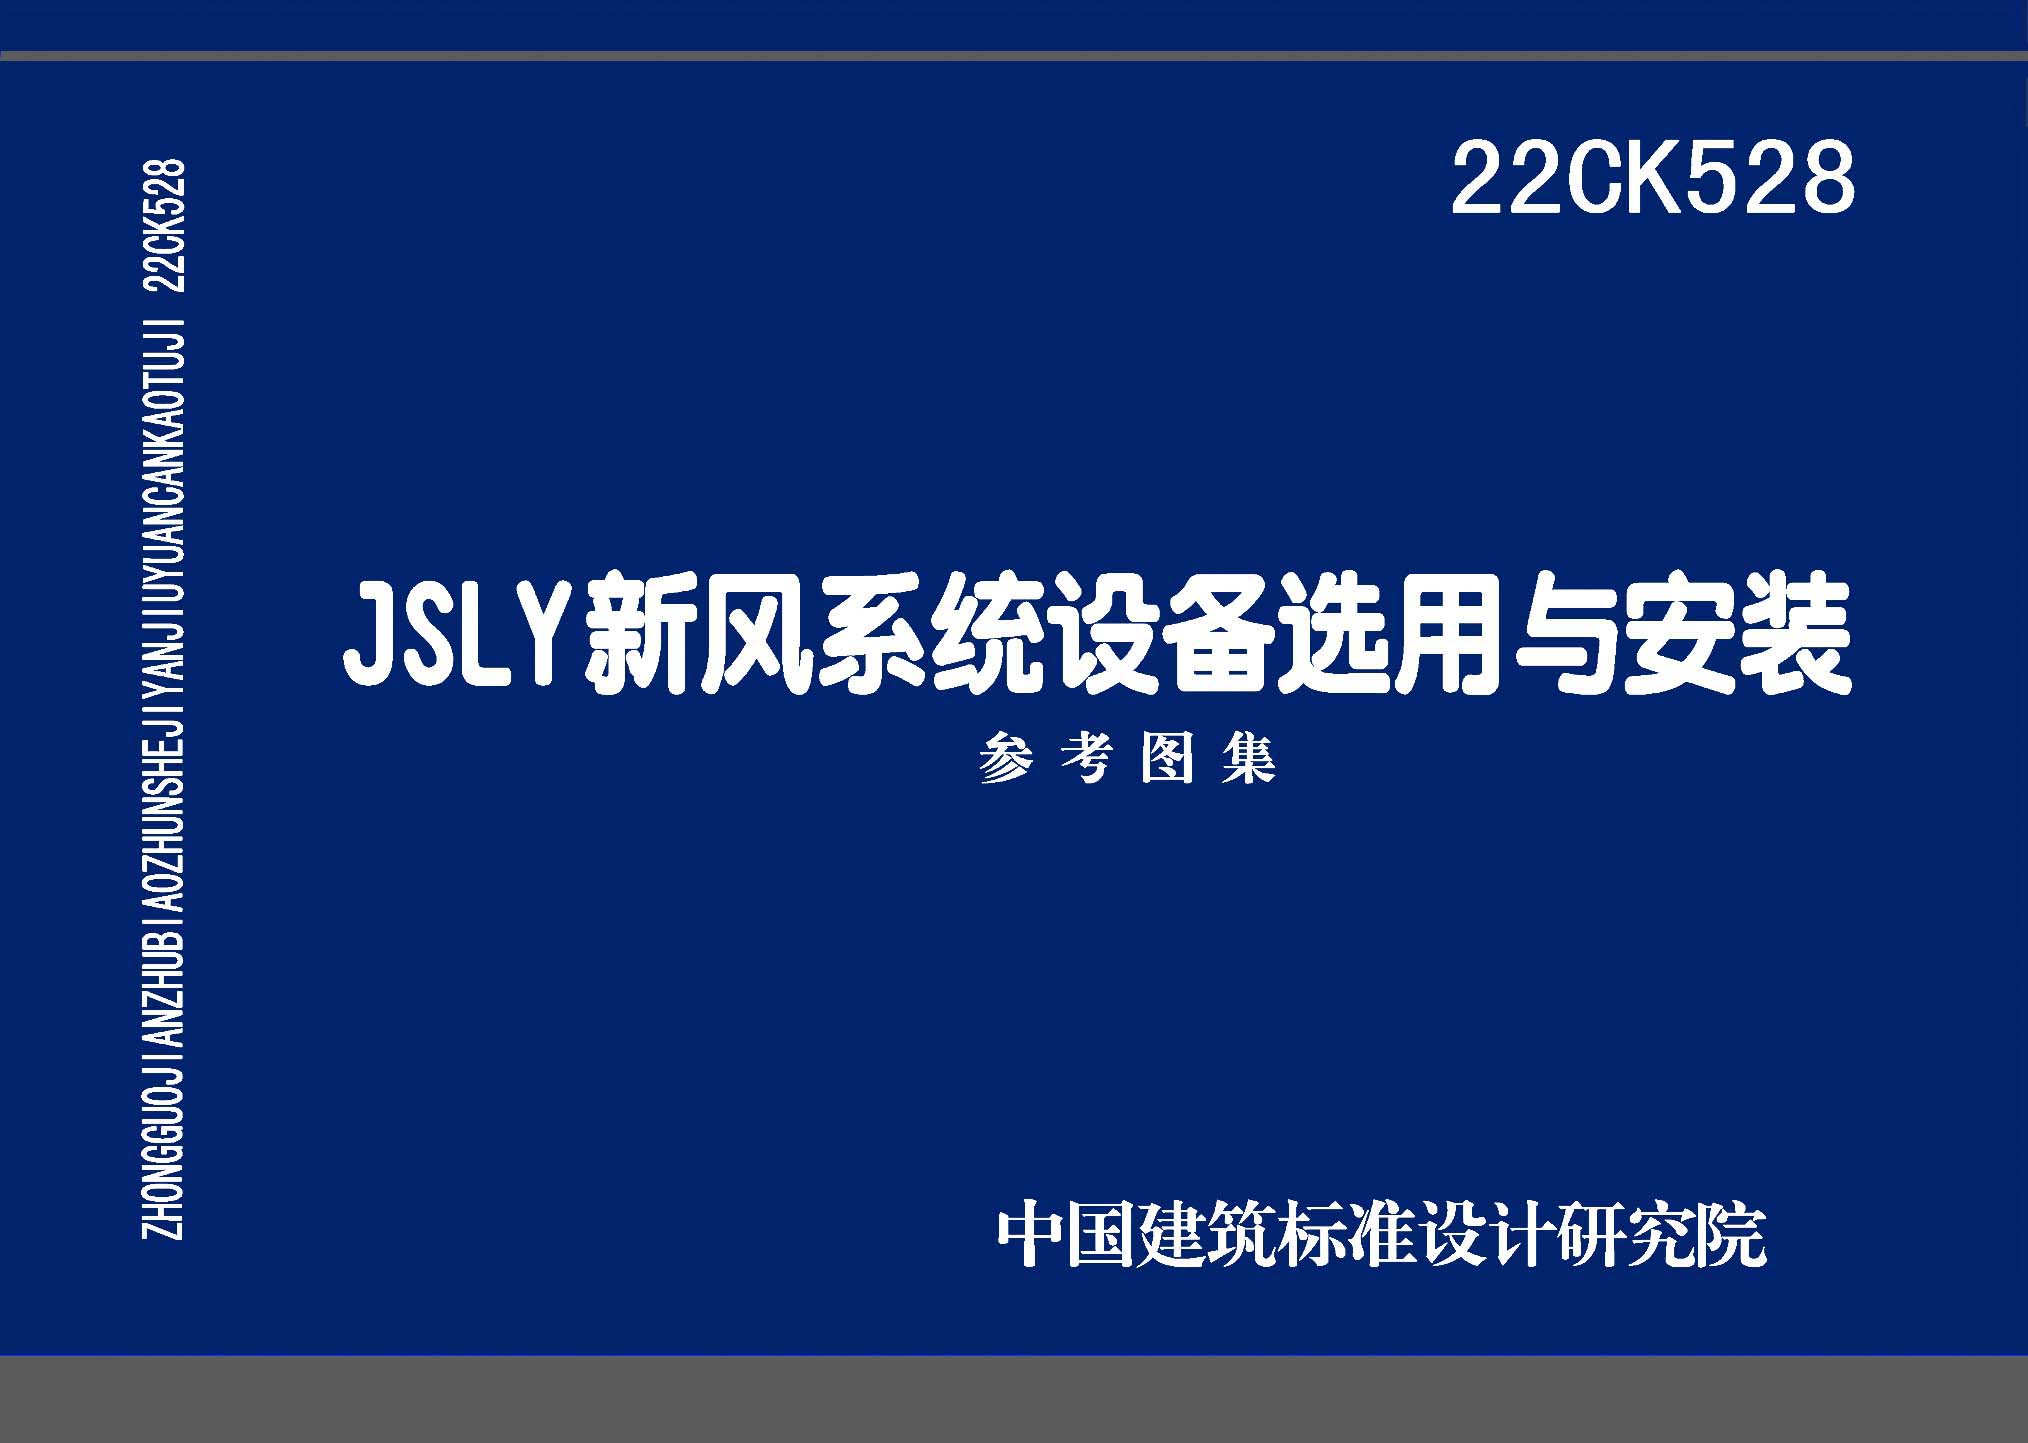 22CK528：JSLY新风系统设备选用与安装